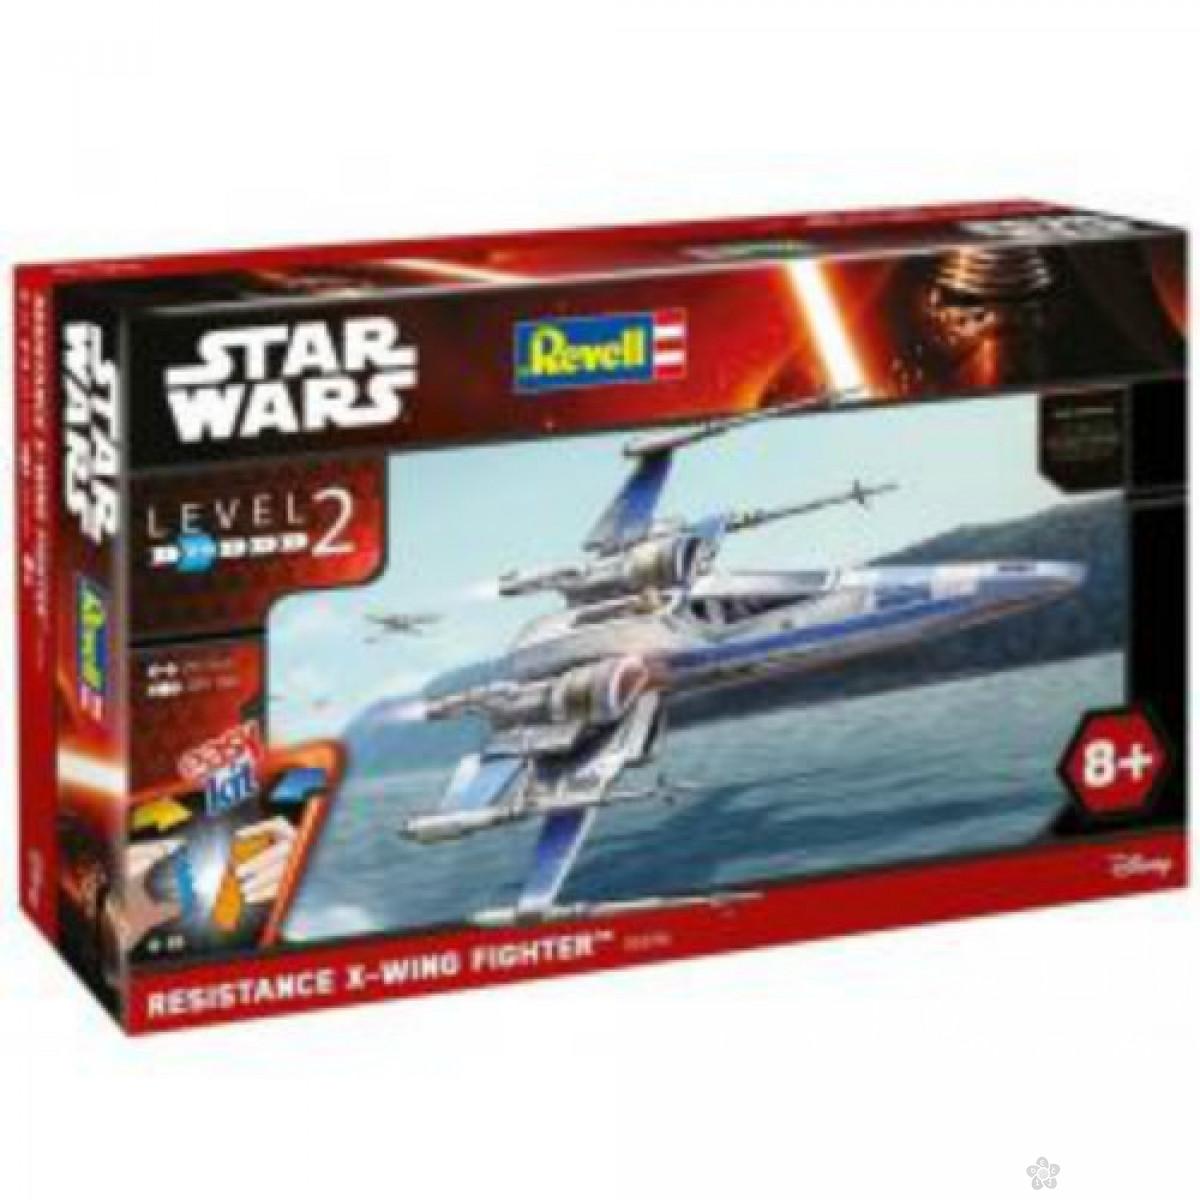 Avion Star Wars Revell 06696 